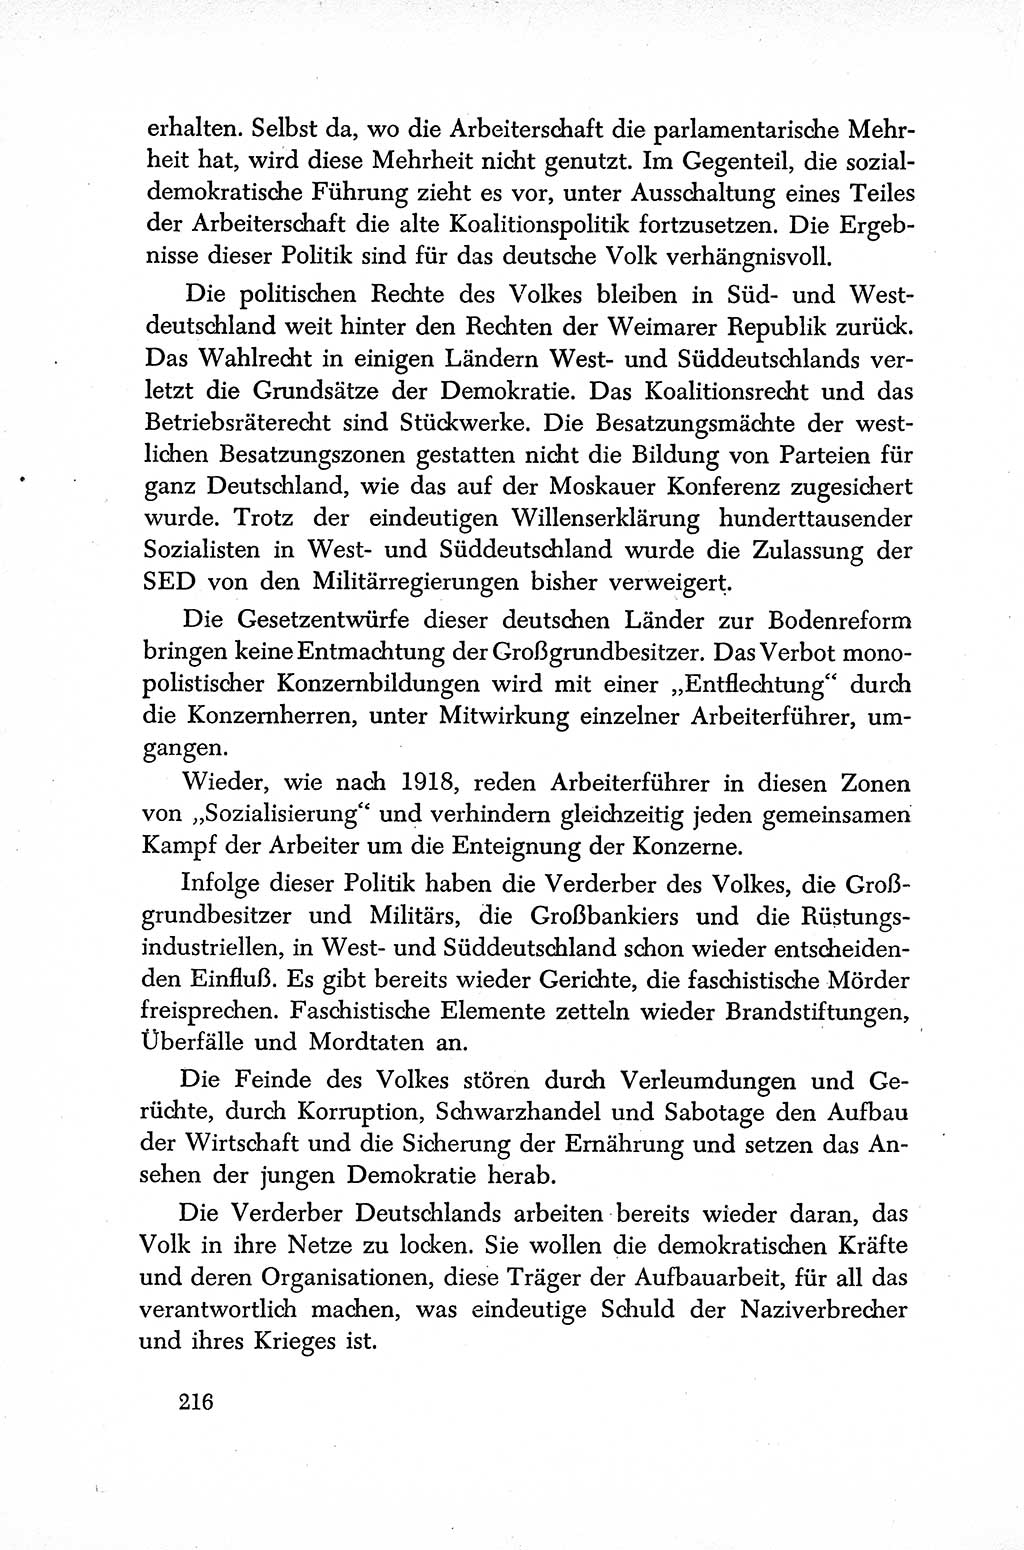 Dokumente der Sozialistischen Einheitspartei Deutschlands (SED) [Sowjetische Besatzungszone (SBZ) Deutschlands] 1946-1948, Seite 216 (Dok. SED SBZ Dtl. 1946-1948, S. 216)